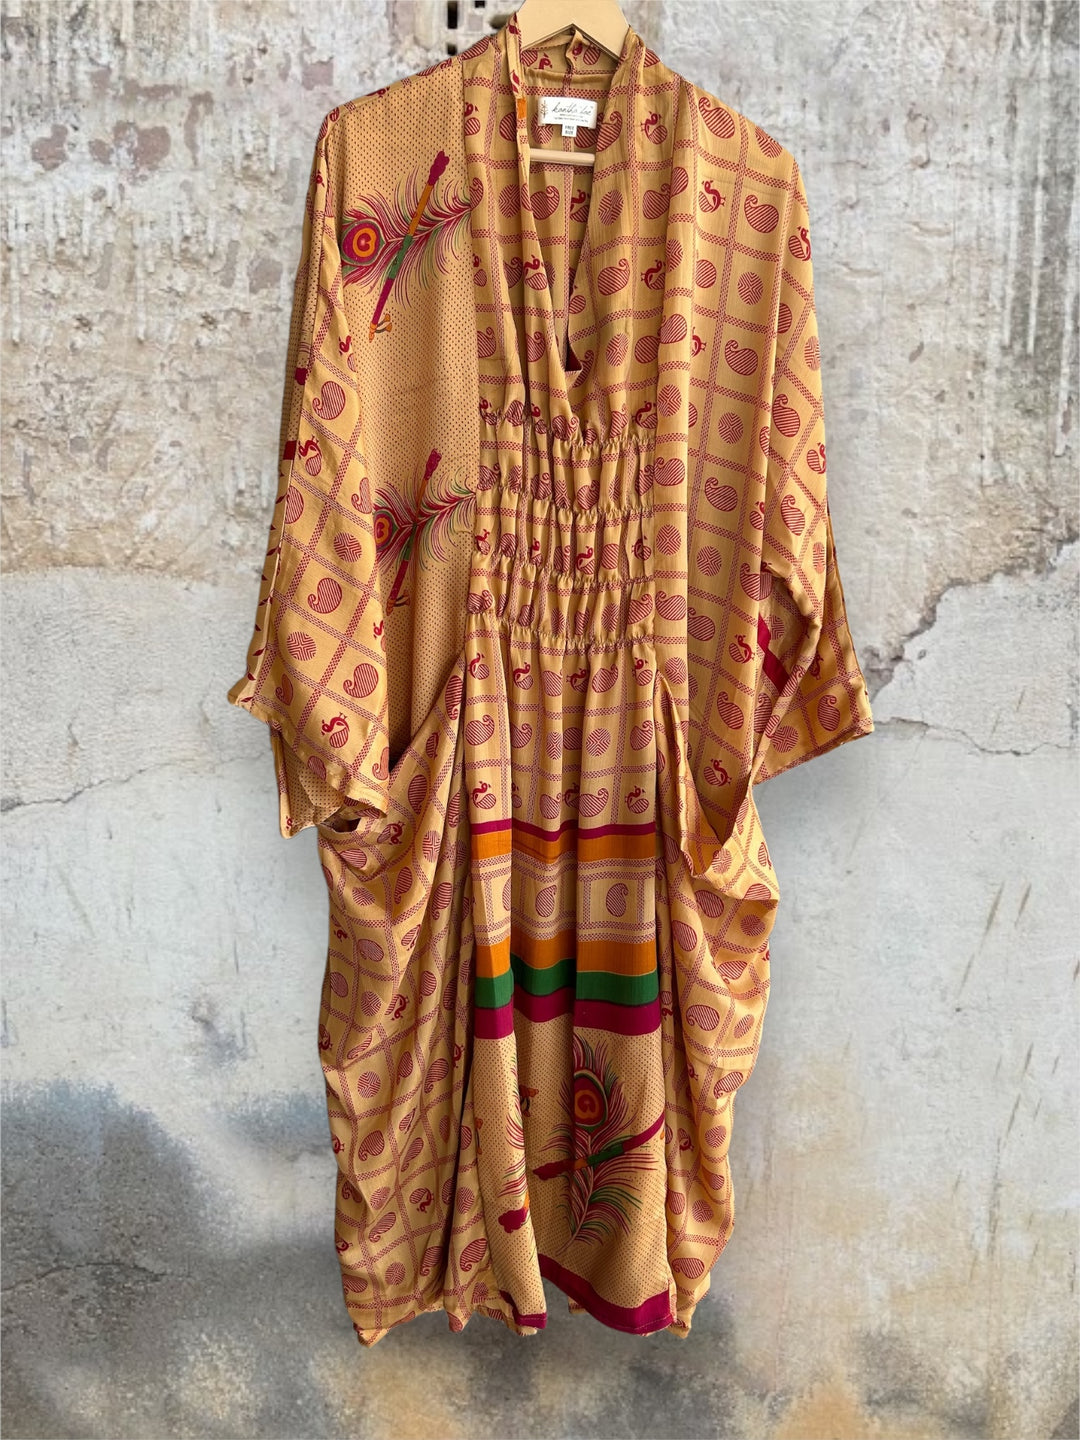 Ruched Dress 0424 030 - Kantha Bae